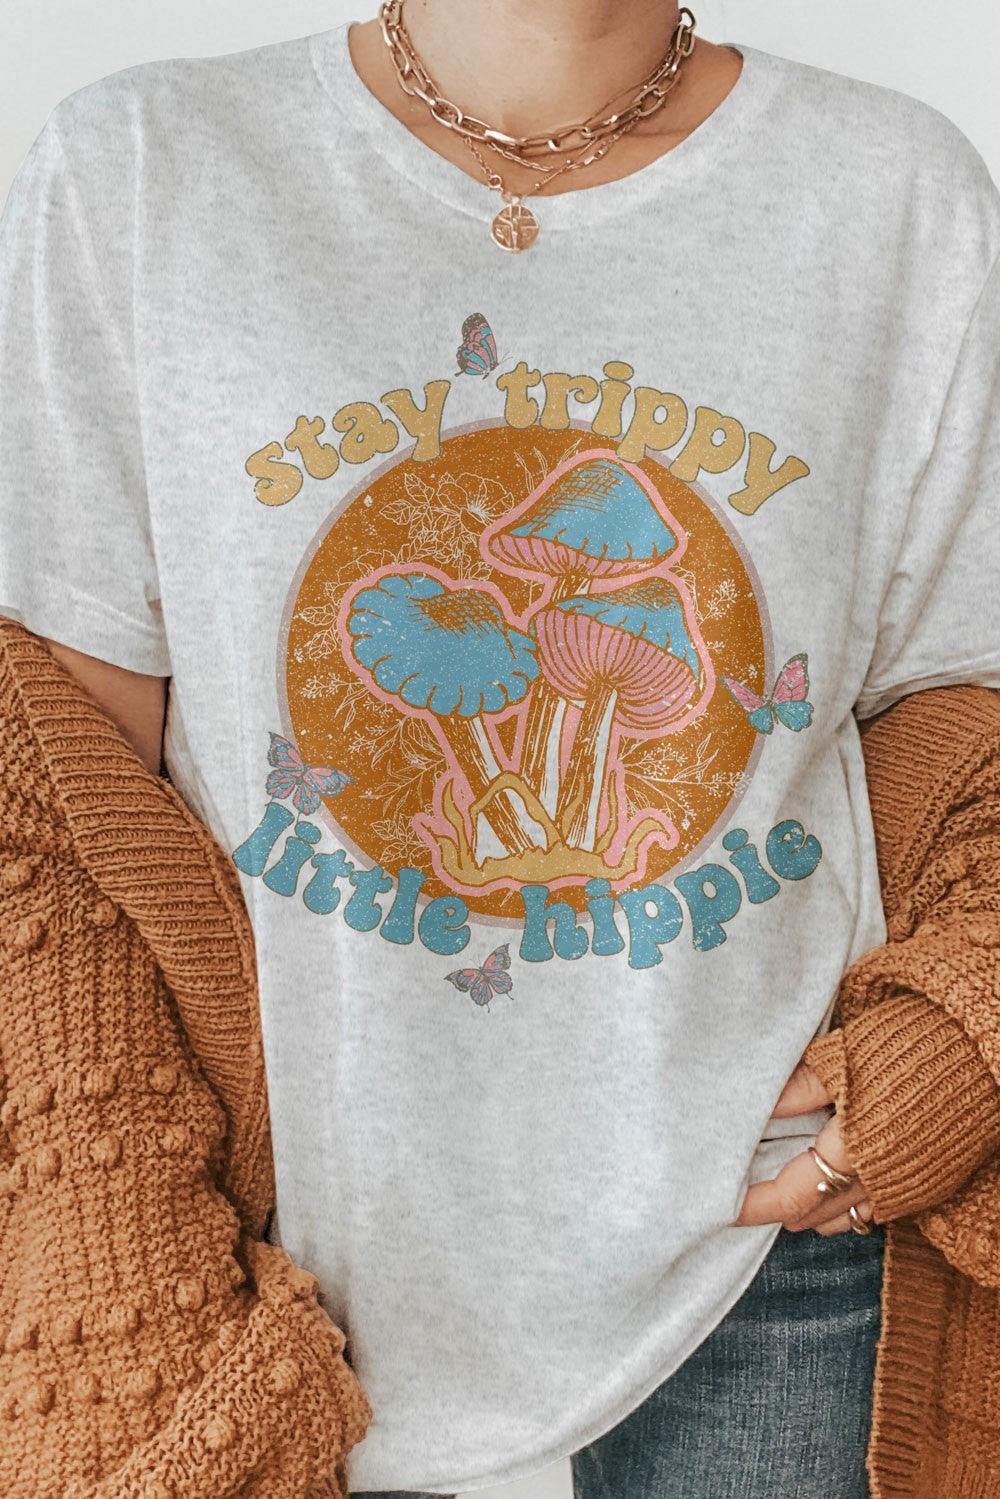 Little Hippie T-Shirt.